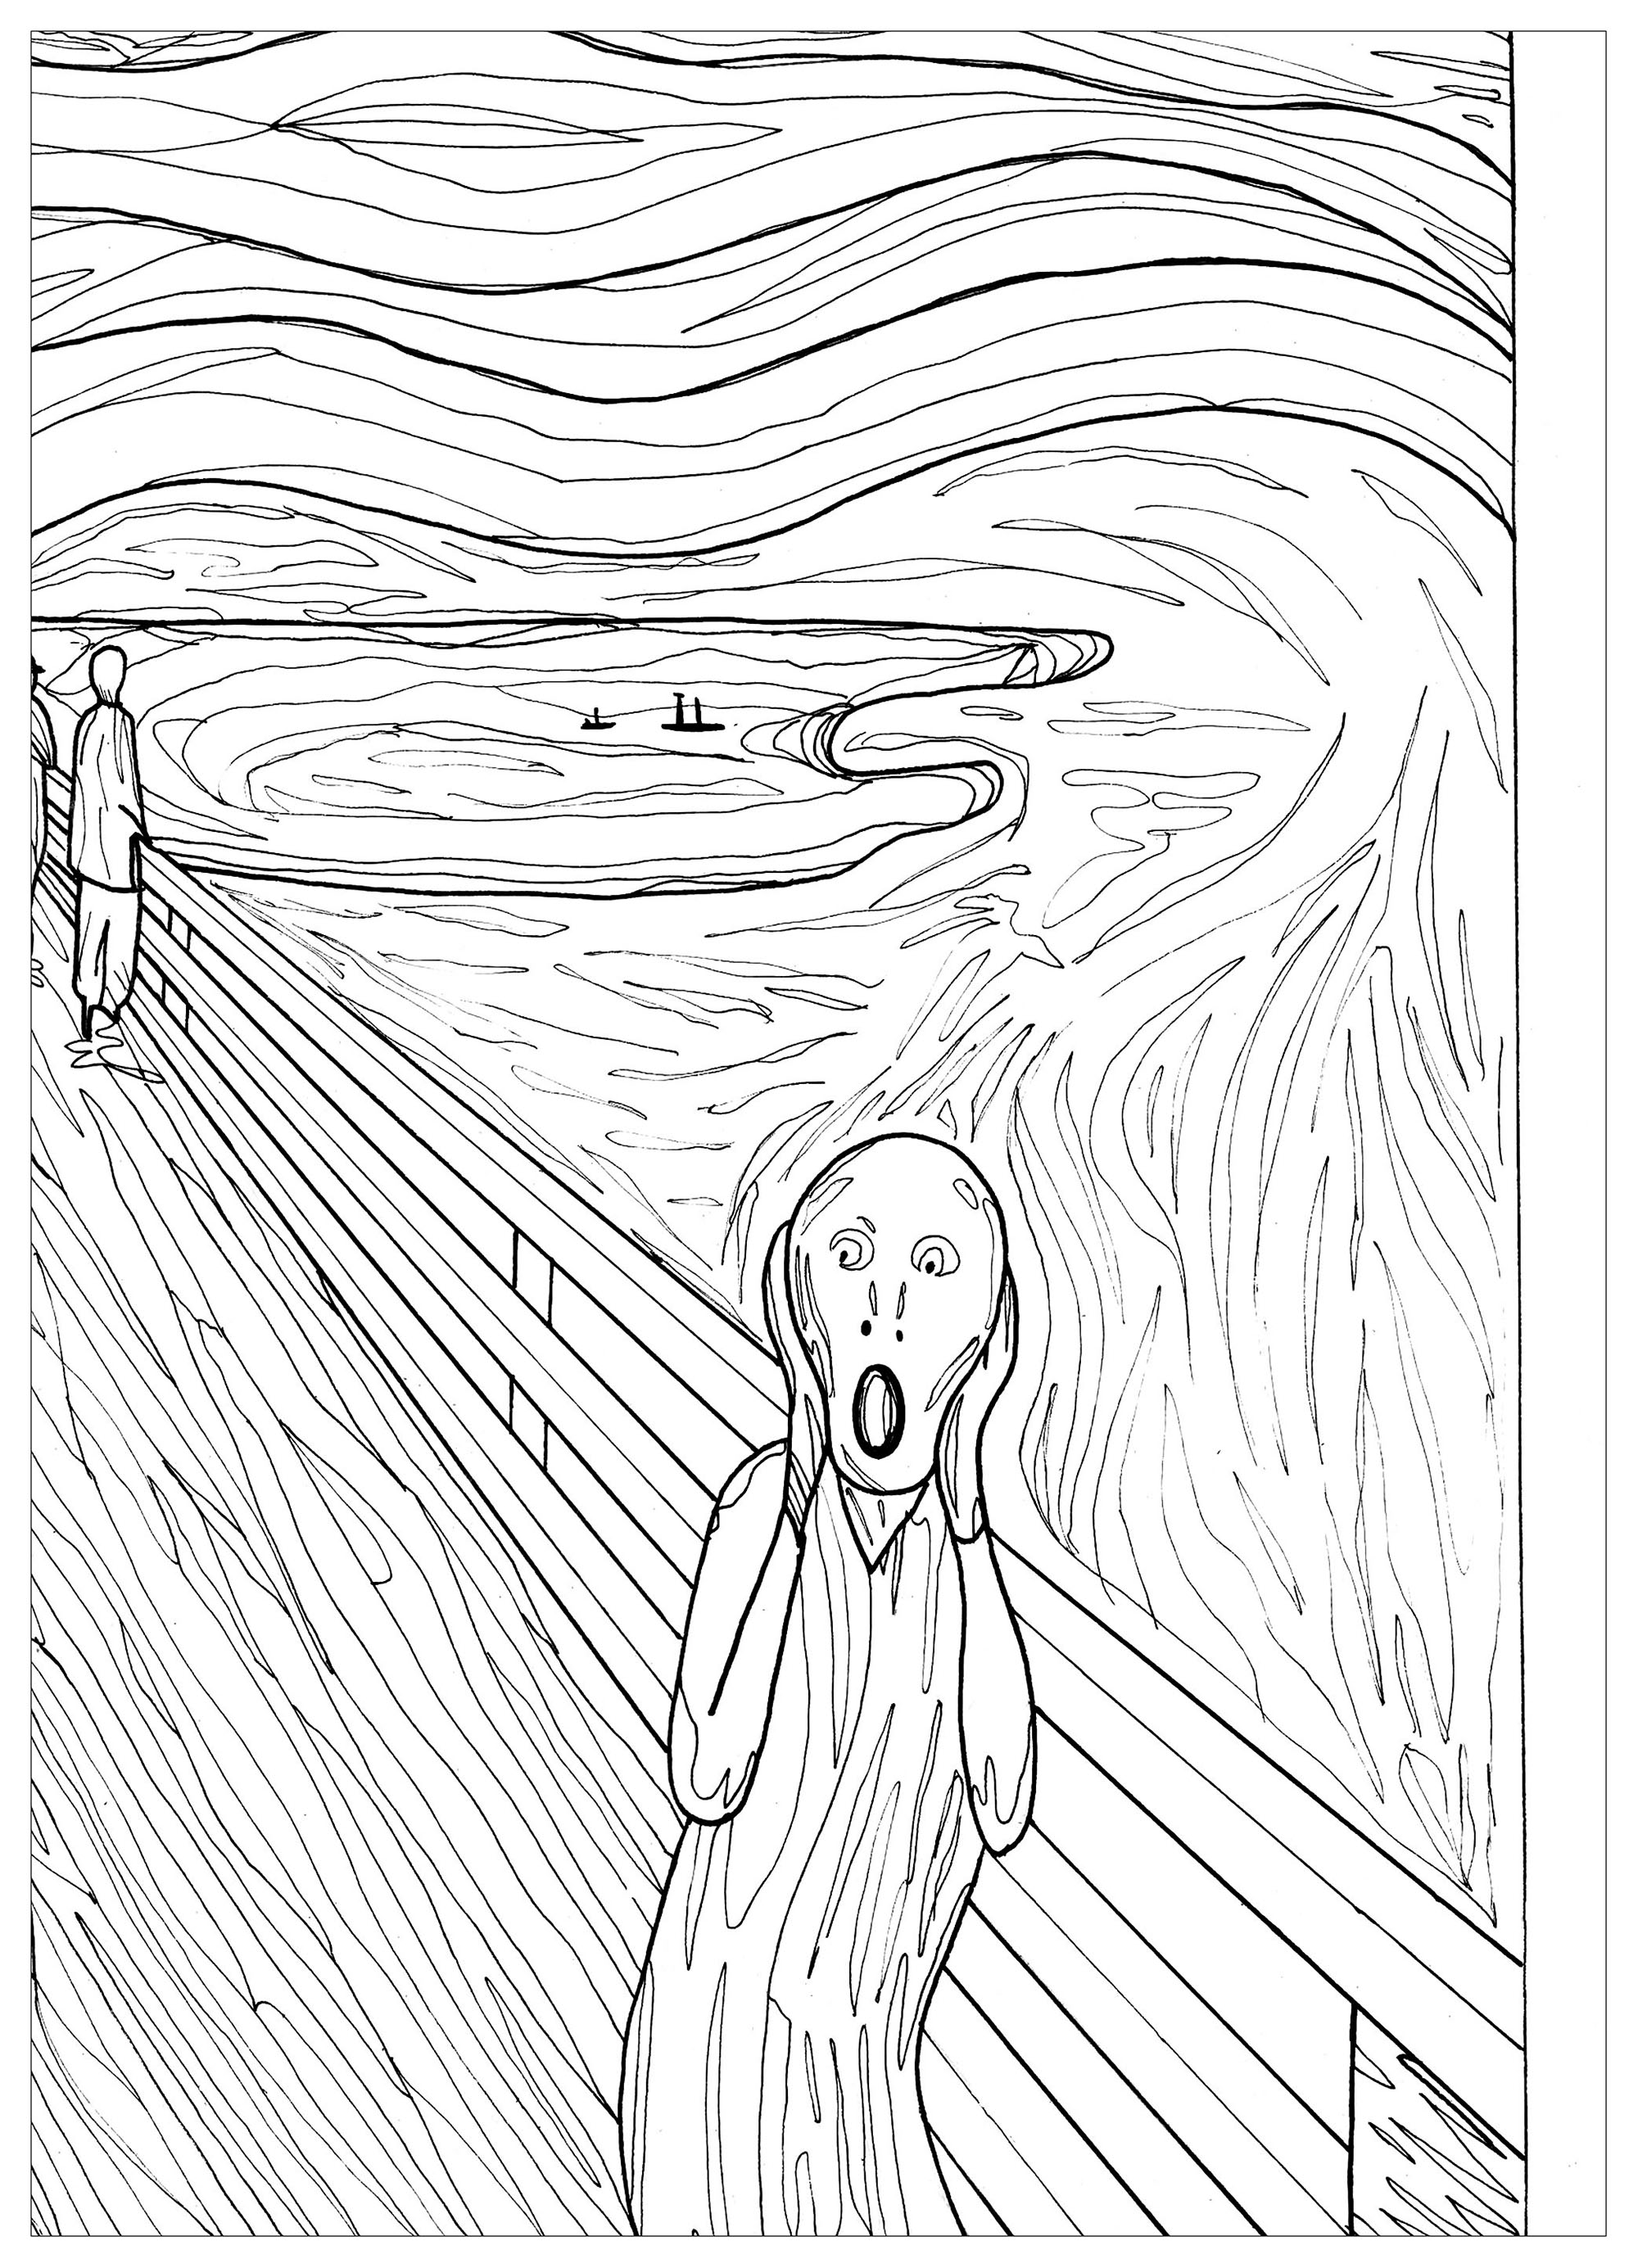 'El grito' de Edvard Munch le dará escalofríos. ¿Sabías que...? El director Wes Craven se inspiró en El grito de Munch cuando conceptualizó la idea de la inquietante máscara que aparece a lo largo de su película de terror de 1996 Scream, protagonizada por Drew Barrymore, Courtney Cox y Neve Campbell.